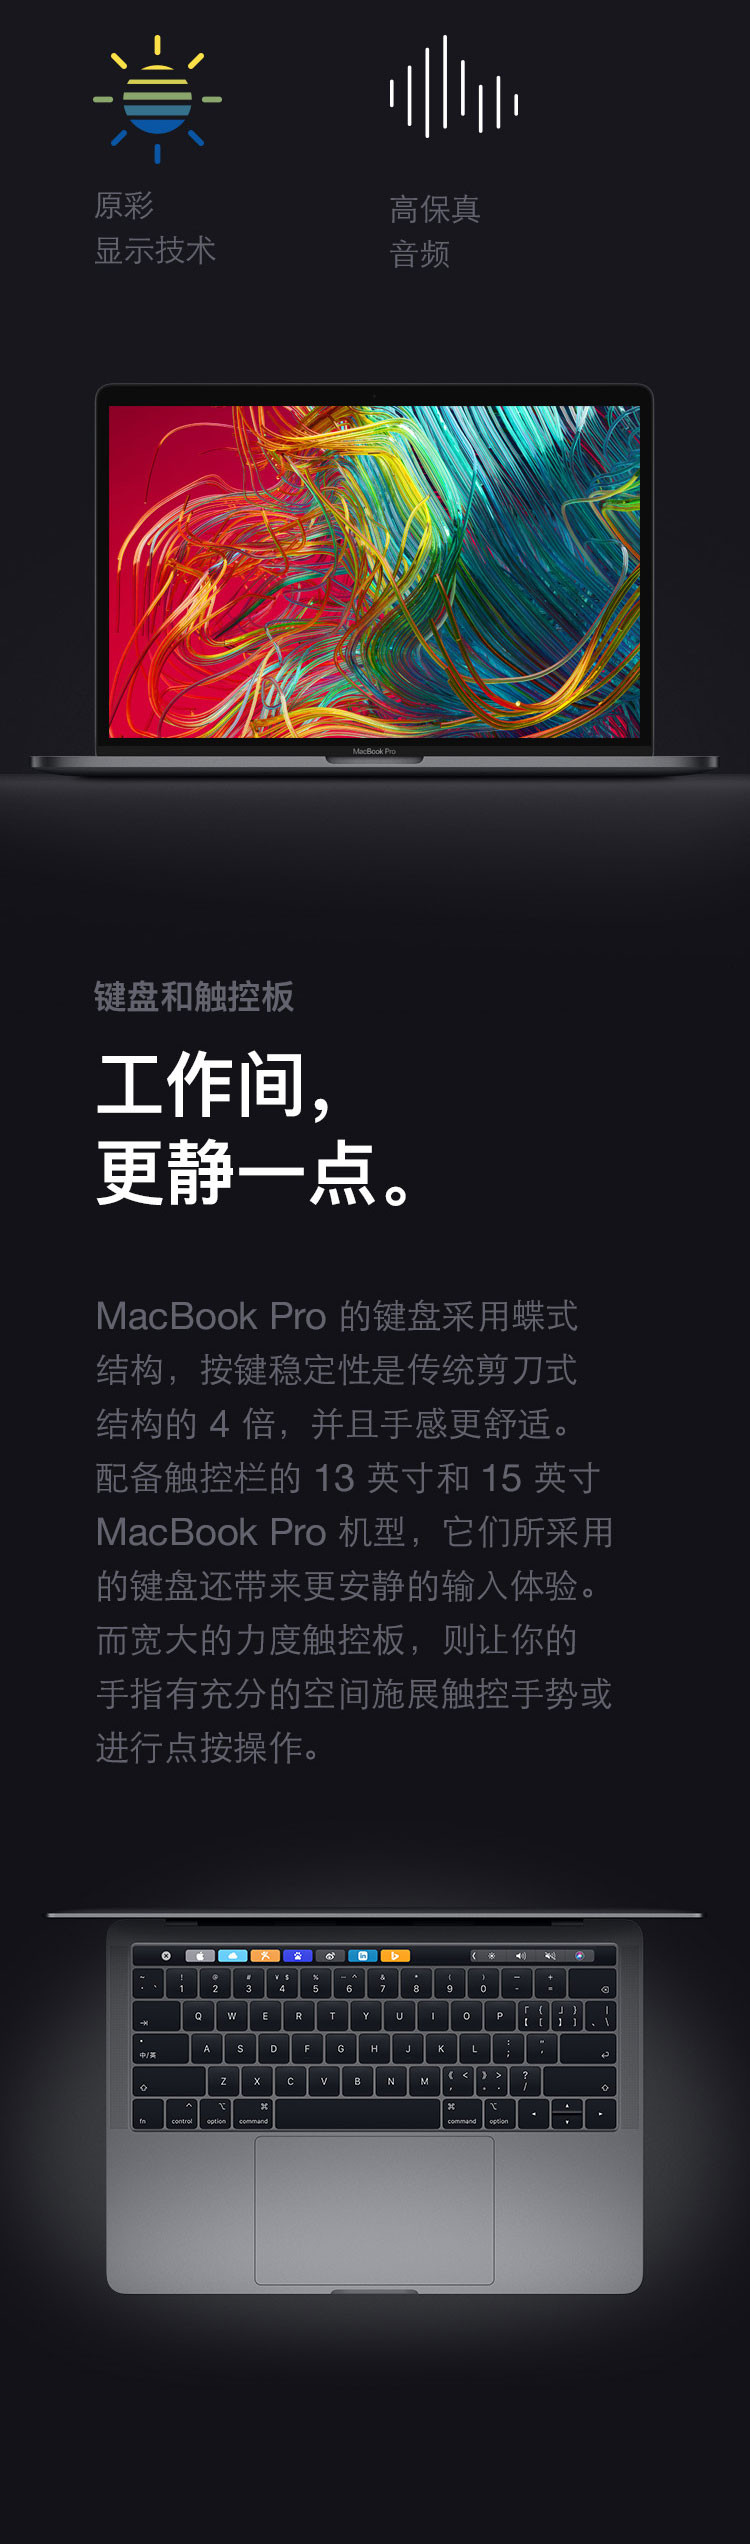 苹果/APPLE 2019款 Macbook Pro 15.4寸 笔记本电脑 MV902 MV922